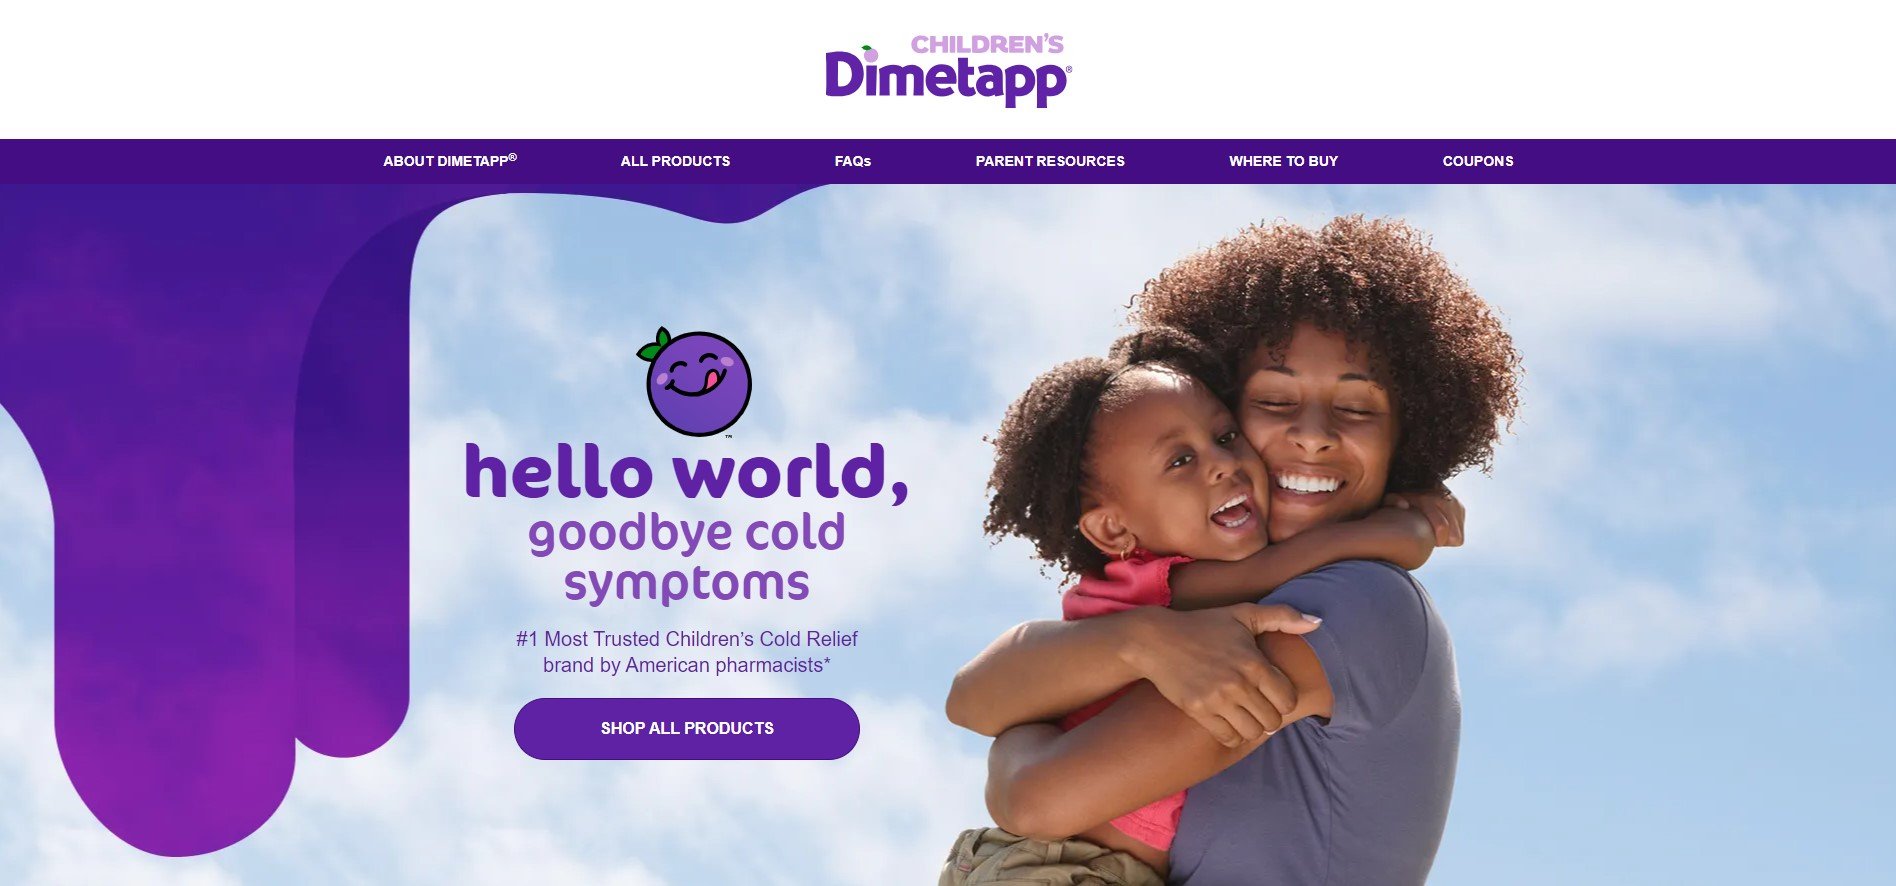 Children's DImetapp Website 2.jpg